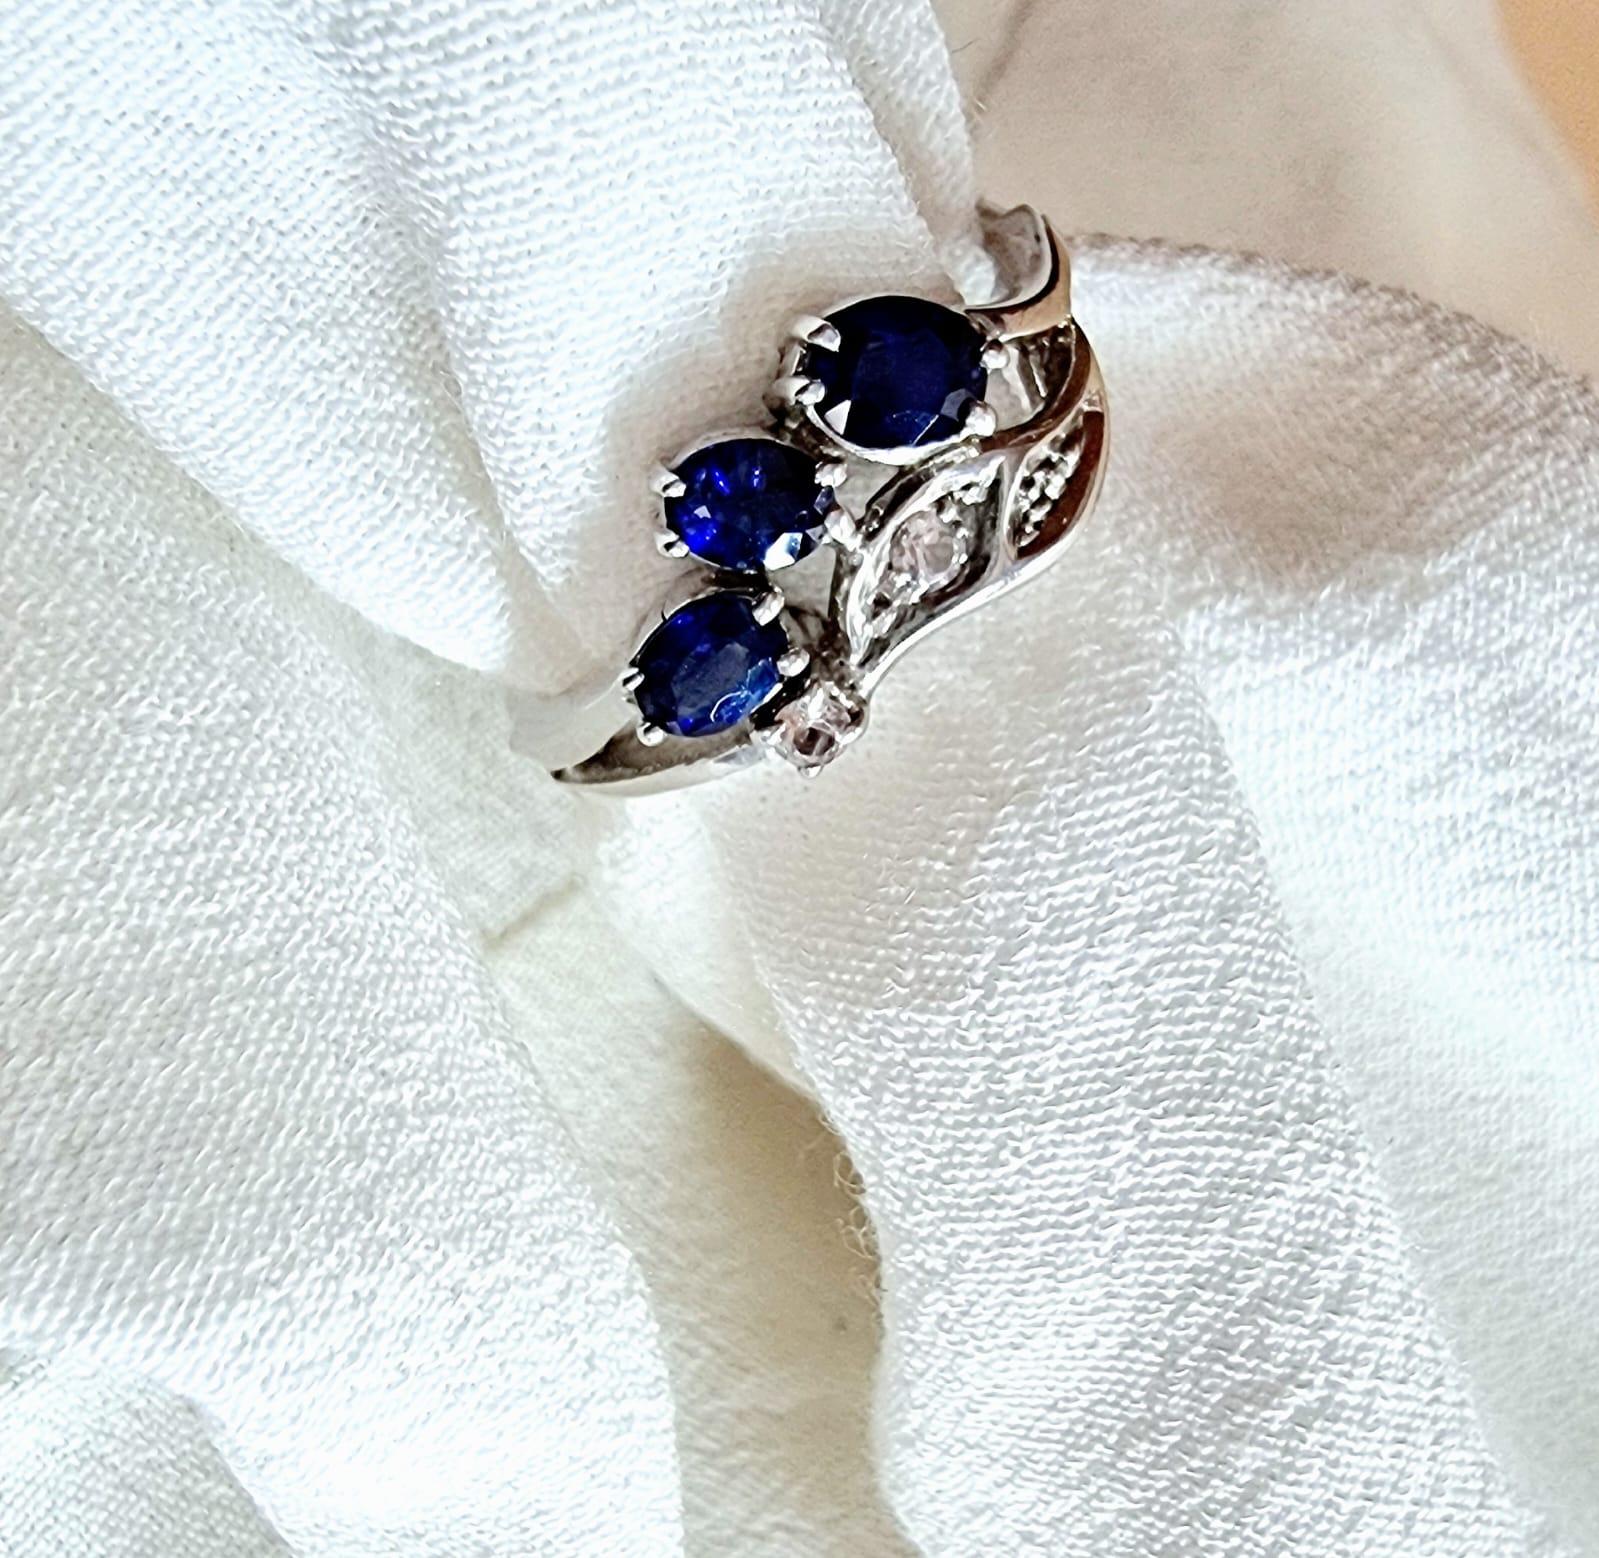 Wir präsentieren unseren .9CTW Oval Blue Sapphire Platinum Silver Vintage-Inspired Leaf Design Ring, ein atemberaubendes Stück, das Eleganz und Raffinesse ausstrahlt. Dieser Ring hat ein faszinierendes Design mit einem ovalen blauen Saphir von 3x